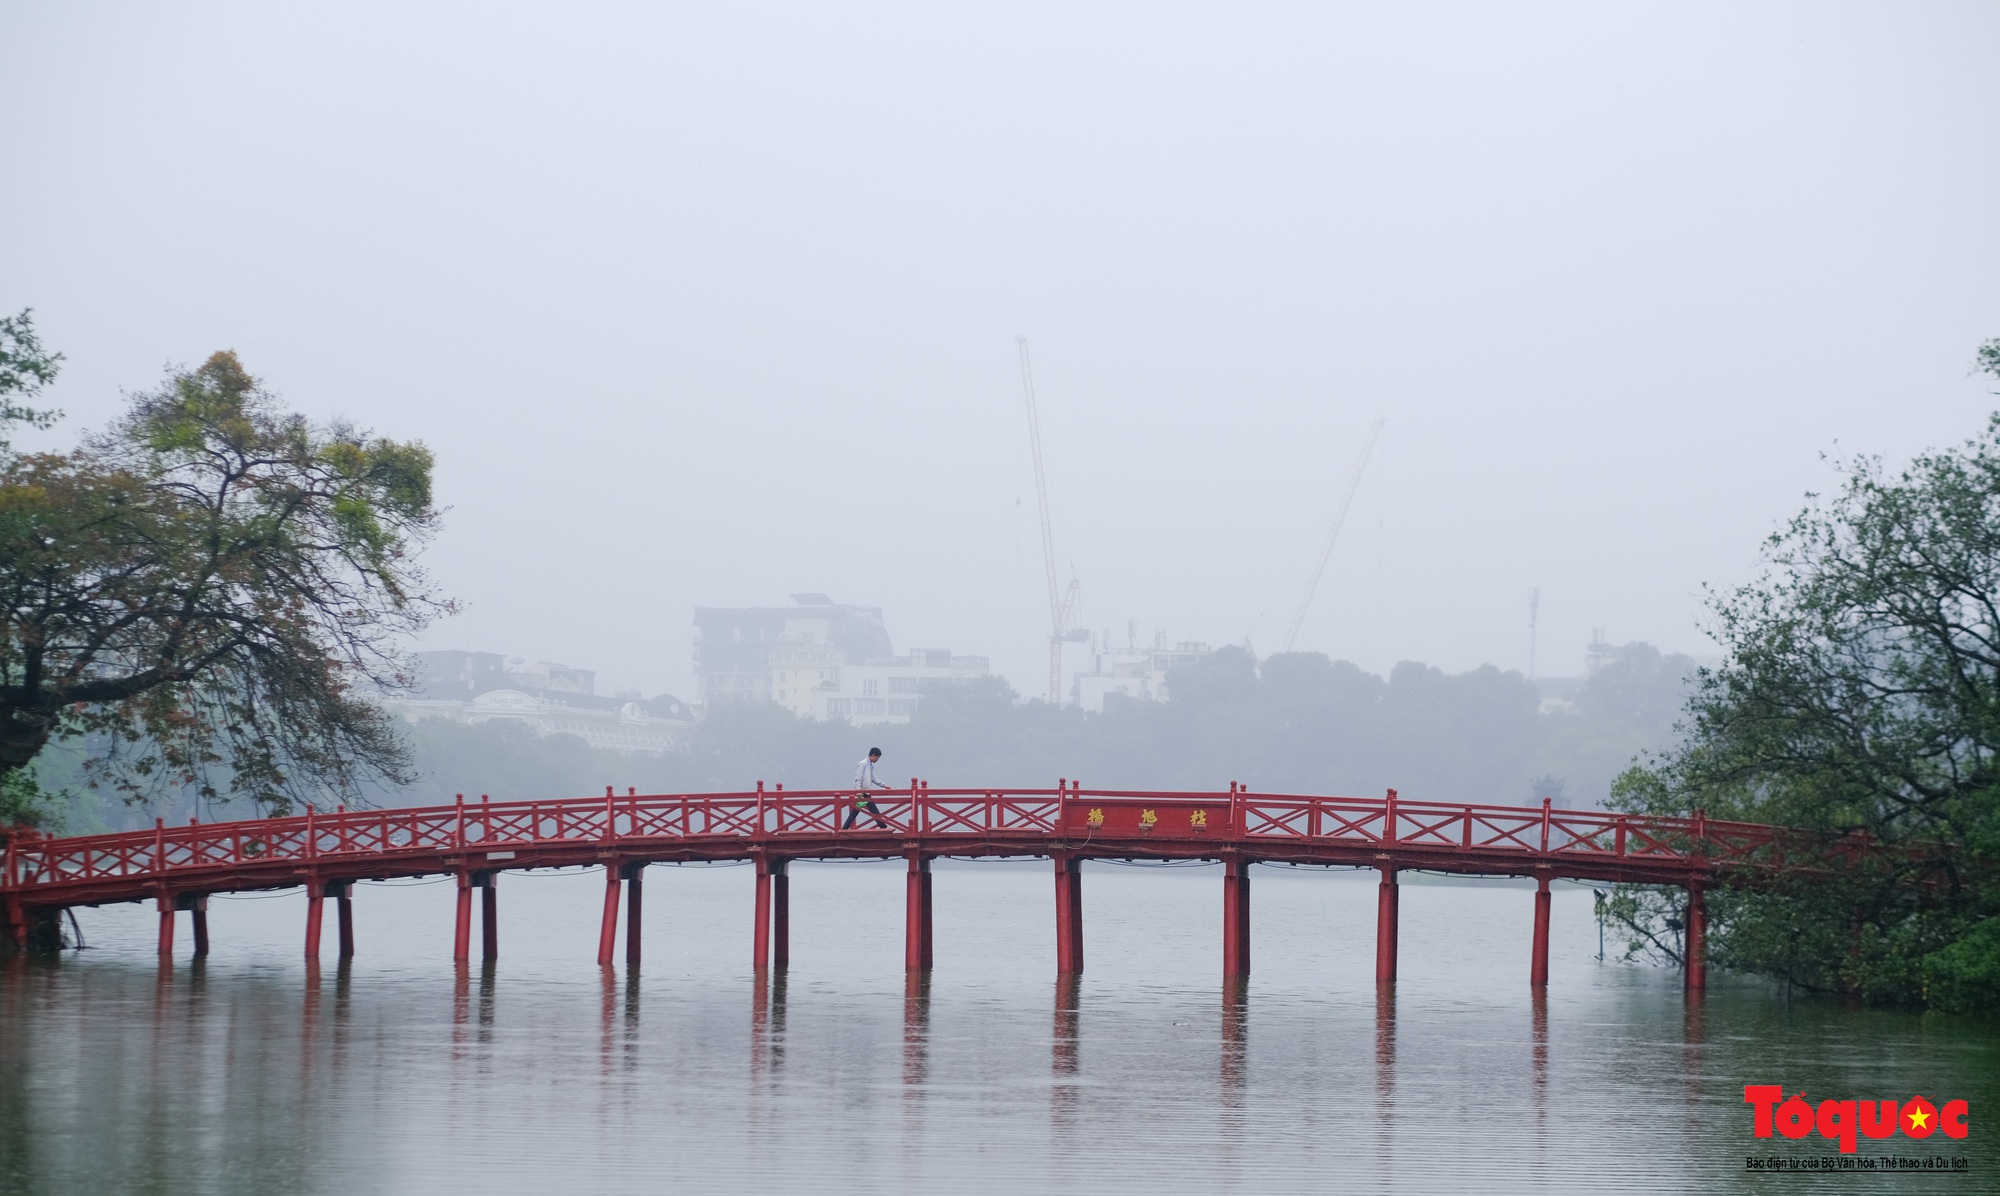 Hồ Gươm mờ ảo cổ kính, quyến rũ khi sương mù bao phủ - Ảnh 2.